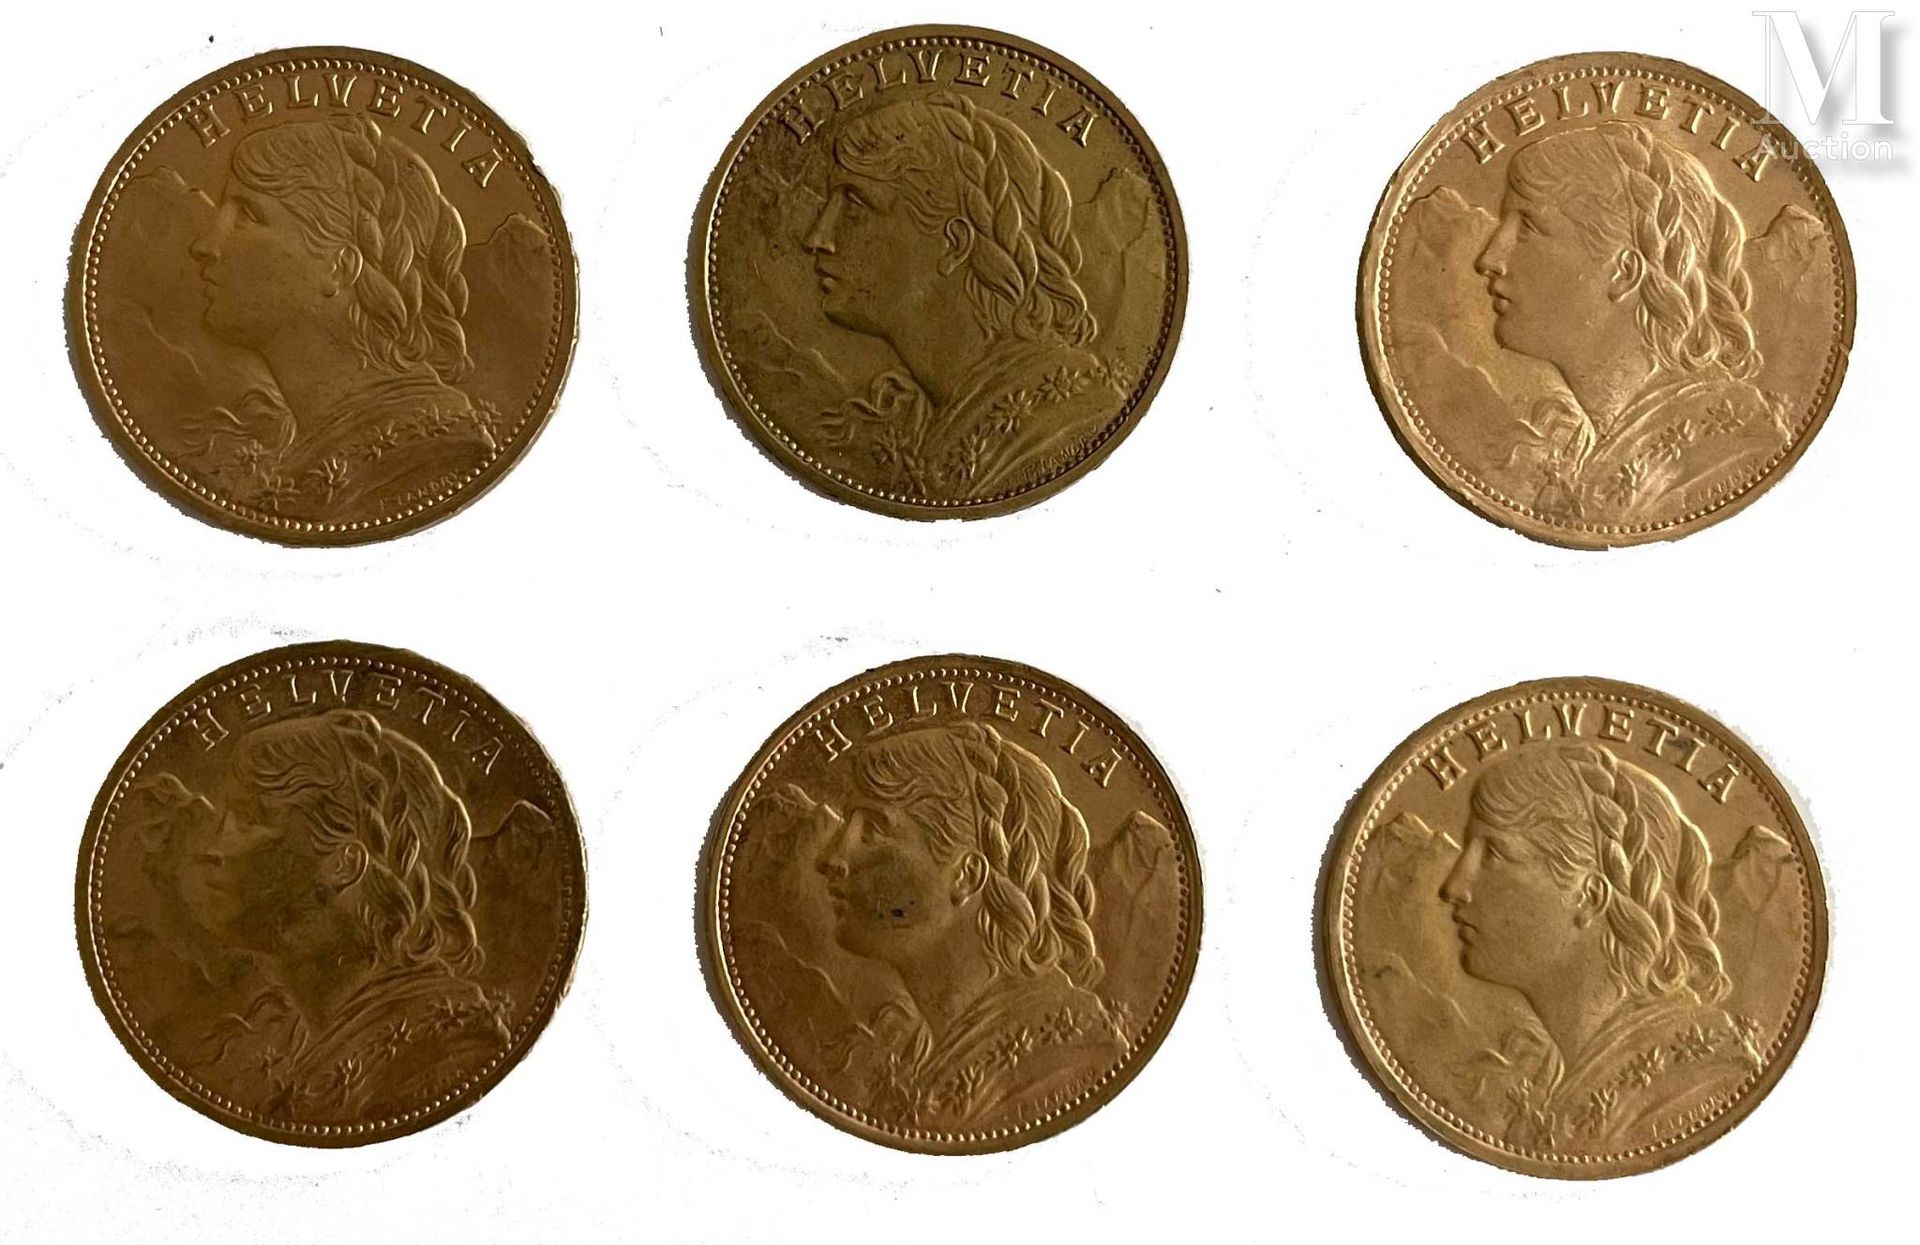 *Suisse - Helvetia 六枚20瑞士法郎硬币拍品

A : 在赫尔维蒂亚的左边有一个头部

R：橡树枝上的生态

状态：VG

材质 : 黄金

&hellip;